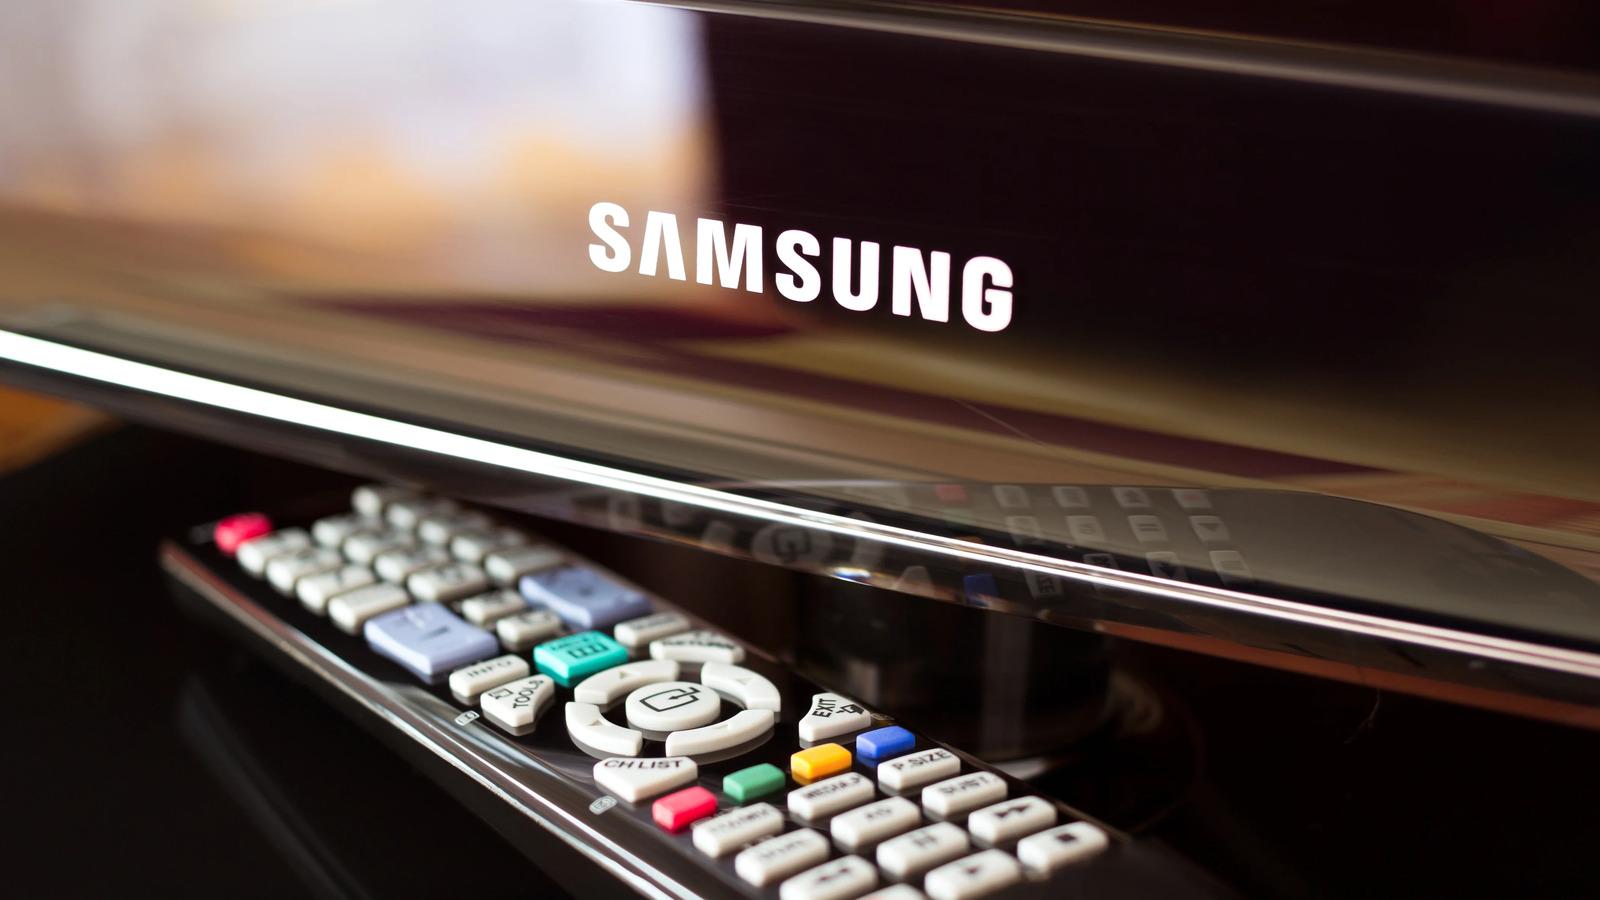 Samsung TV’ler 17 Yıldır Pazar Liderliğini Sürdürüyor